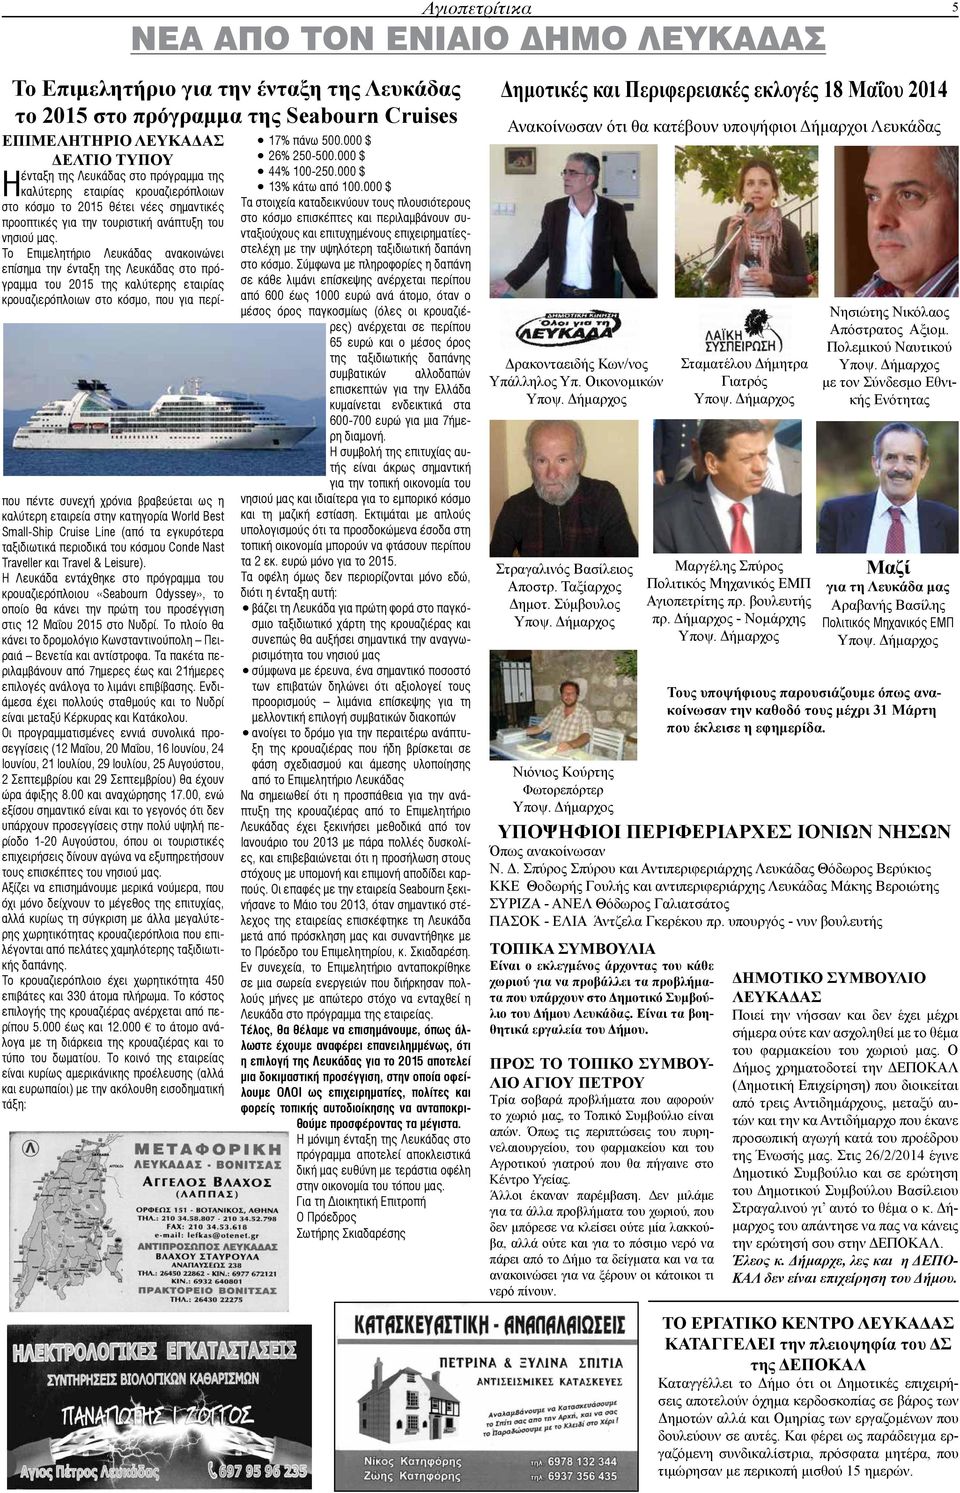 Το Επιμελητήριο Λευκάδας ανακοινώνει επίσημα την ένταξη της Λευκάδας στο πρόγραμμα του 2015 της καλύτερης εταιρίας κρουαζιερόπλοιων στο κόσμο, που για περίπου πέντε συνεχή χρόνια βραβεύεται ως η